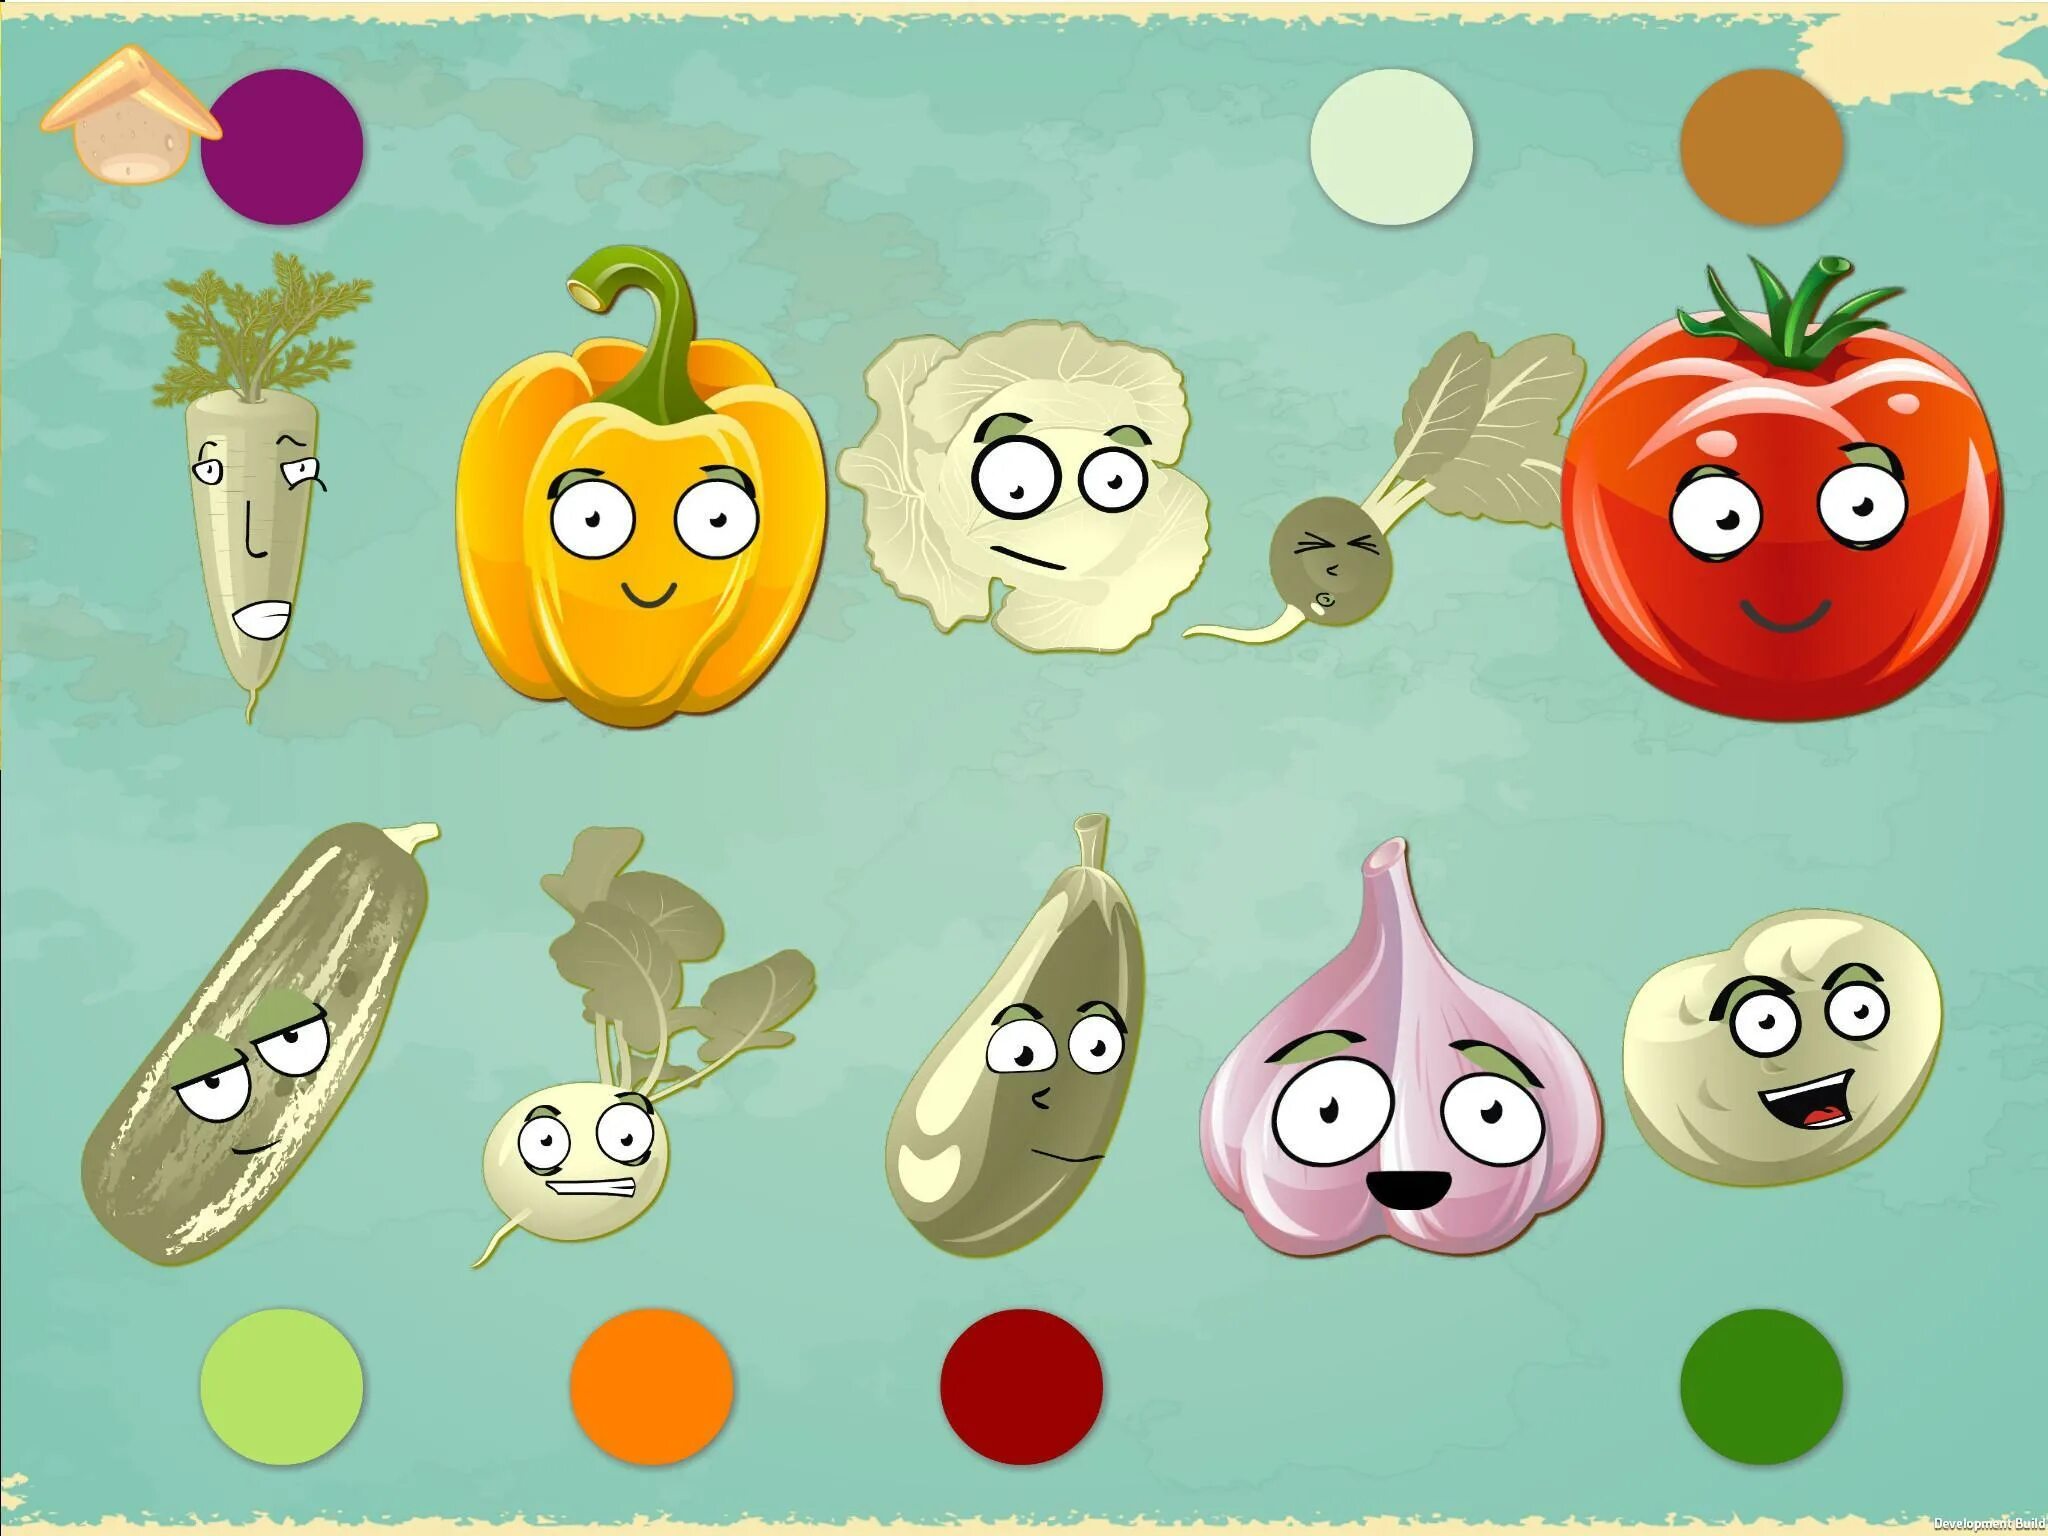 Vegetable игра. Веселые овощи. Веселые овощи и фрукты. Смешные овощи. Веселые овощи для детей.